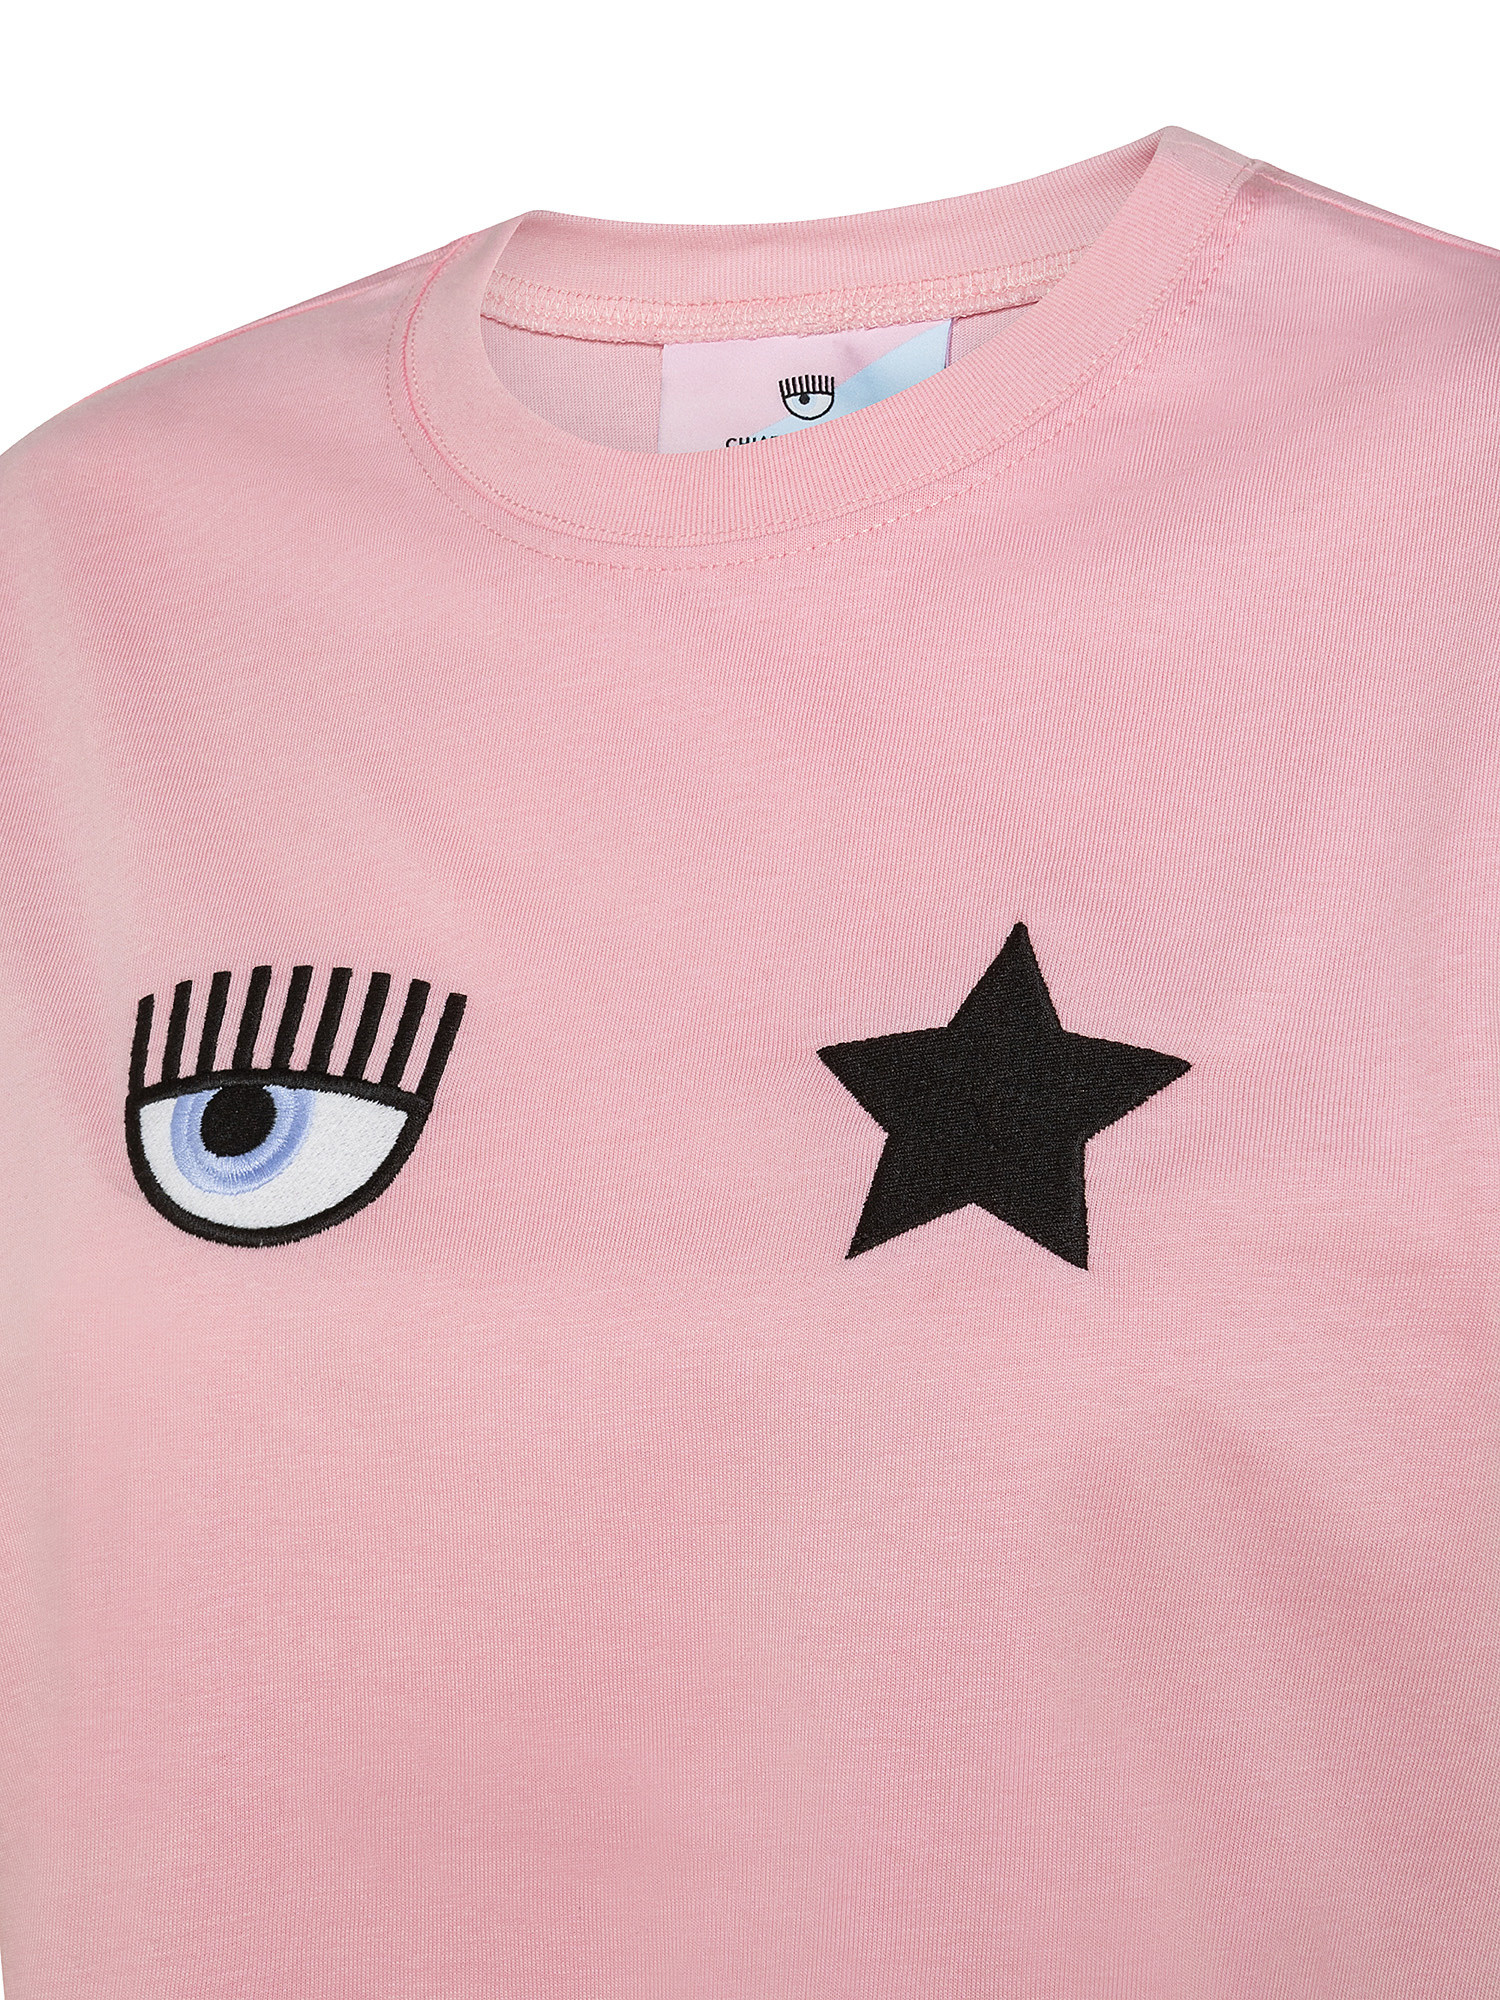 Eye Star T-shirt, Pink, large image number 2